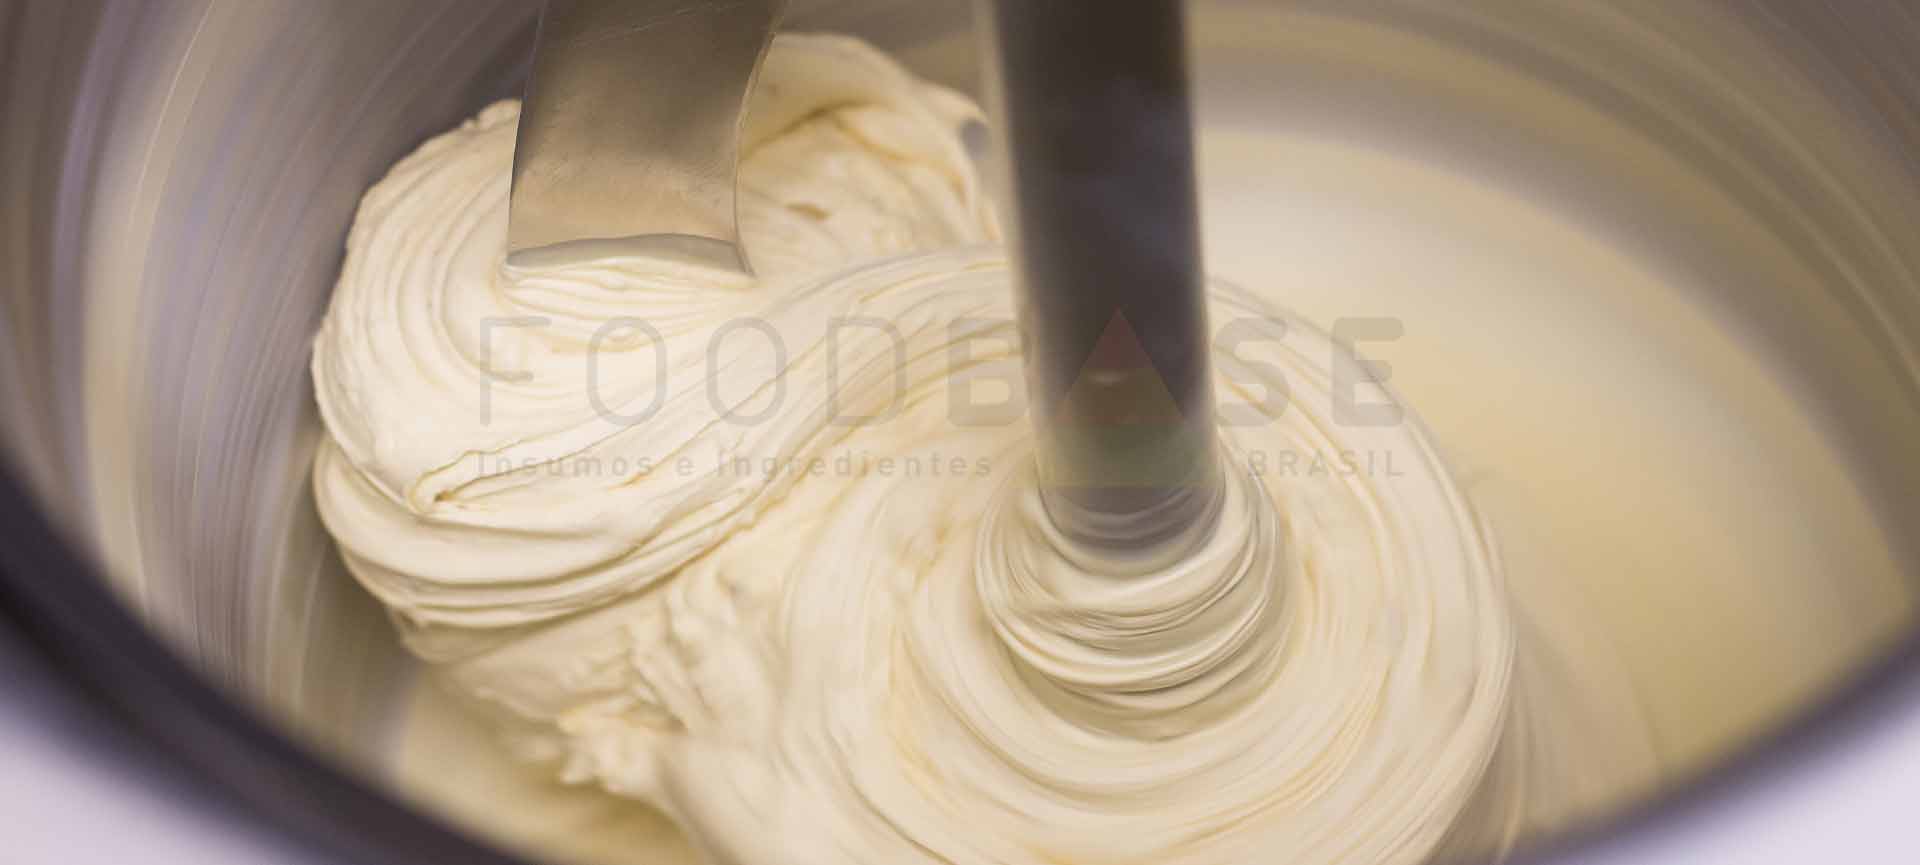 Foodbase - principais etapas de produção do sorvete